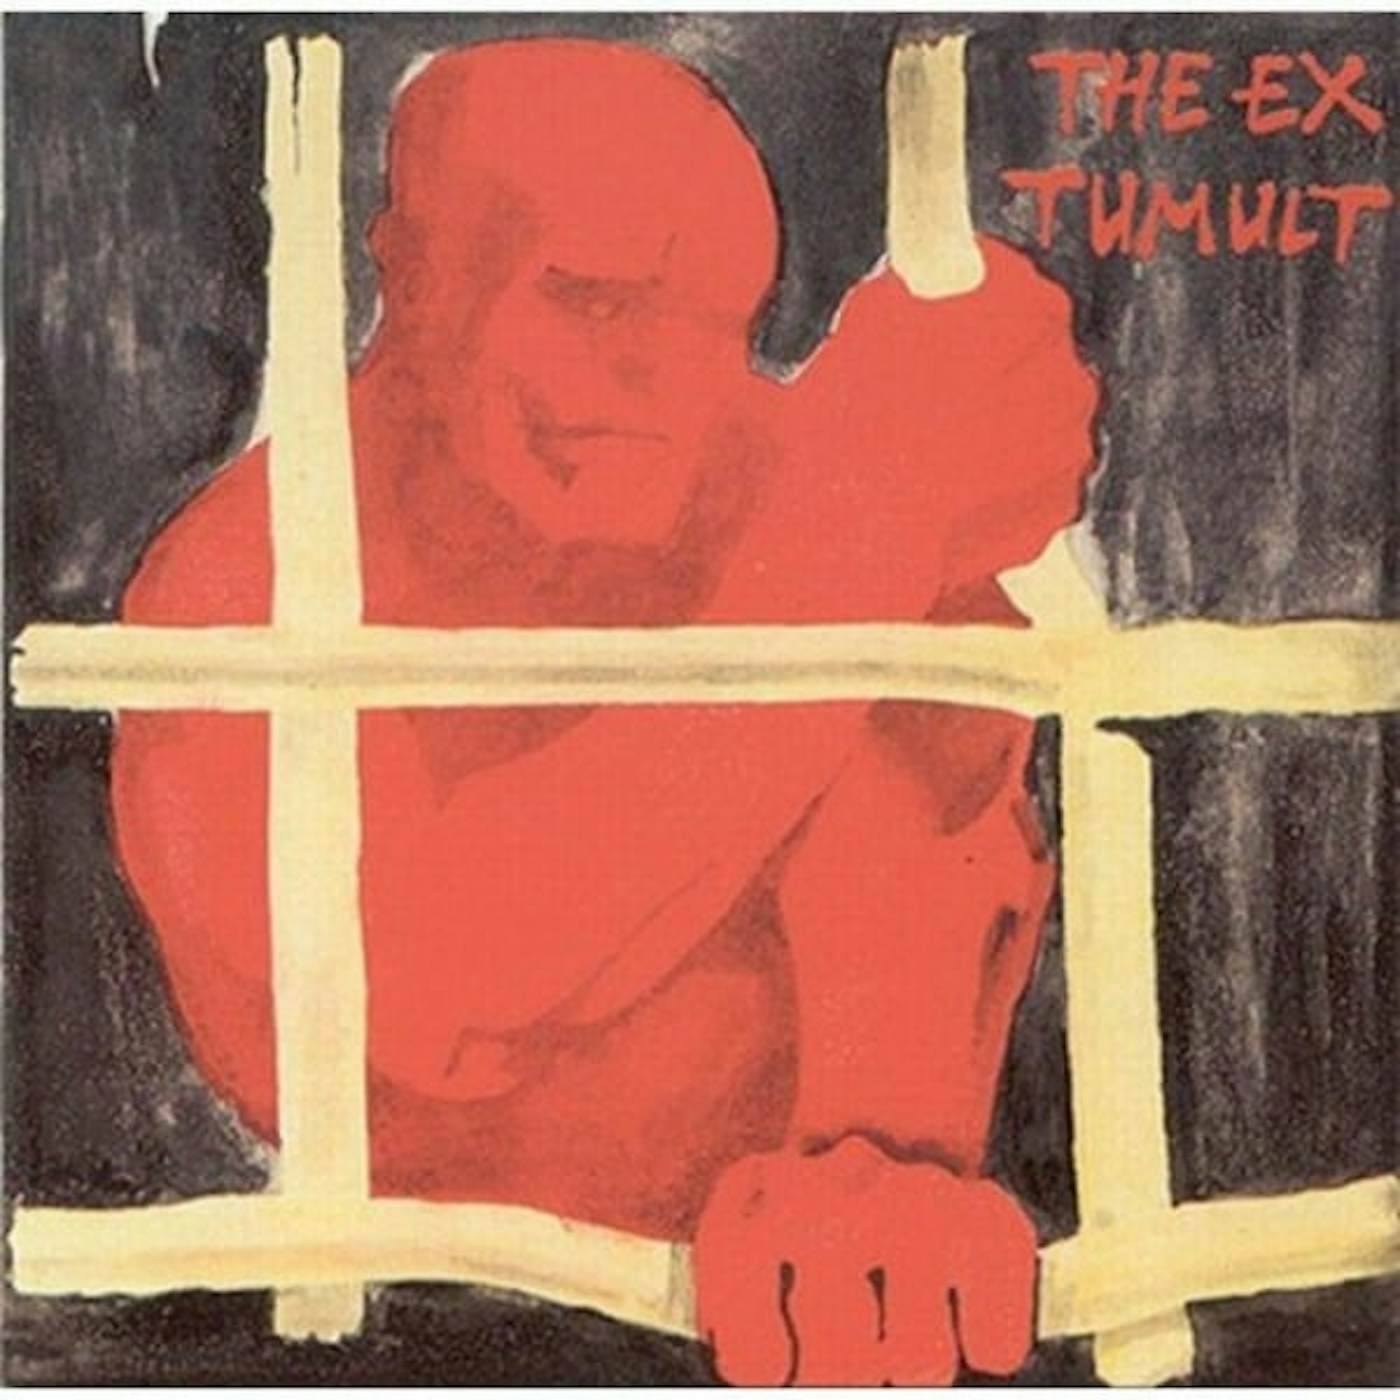 Ex Tumult Vinyl Record